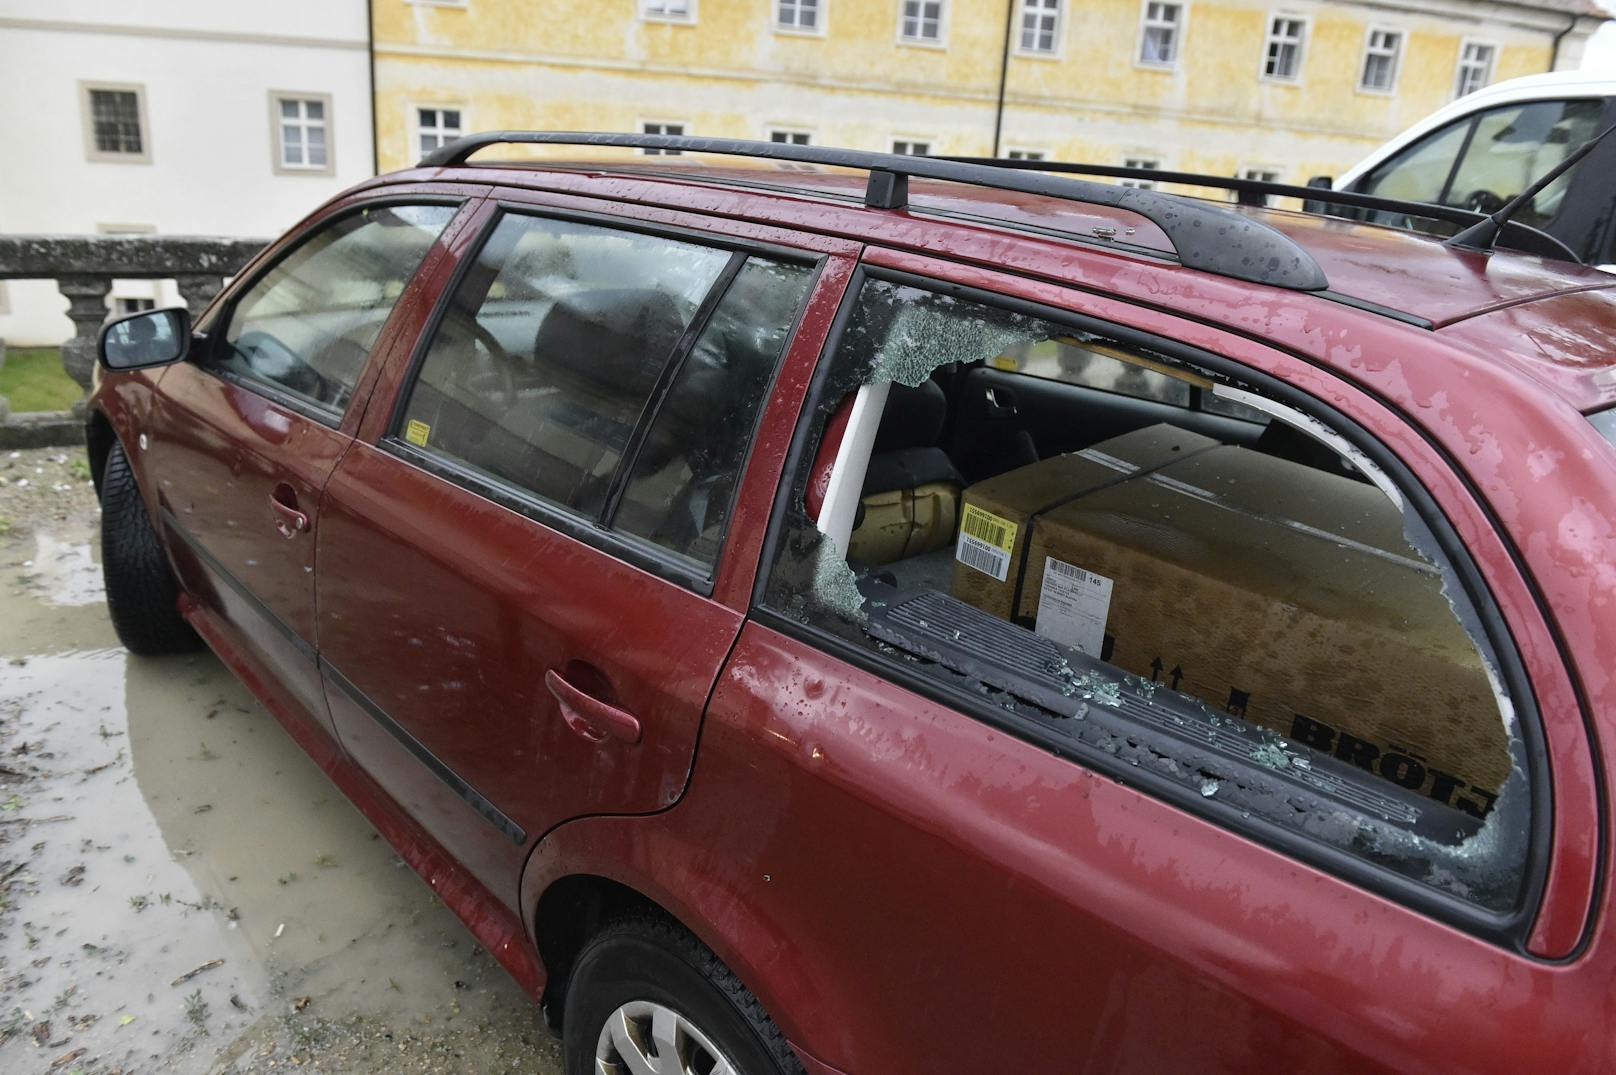 Ein Tornado zog am Donnerstag unweit der österreichischen Grenze über Tschechien und hinterließ eine Spur der Verwüstung.